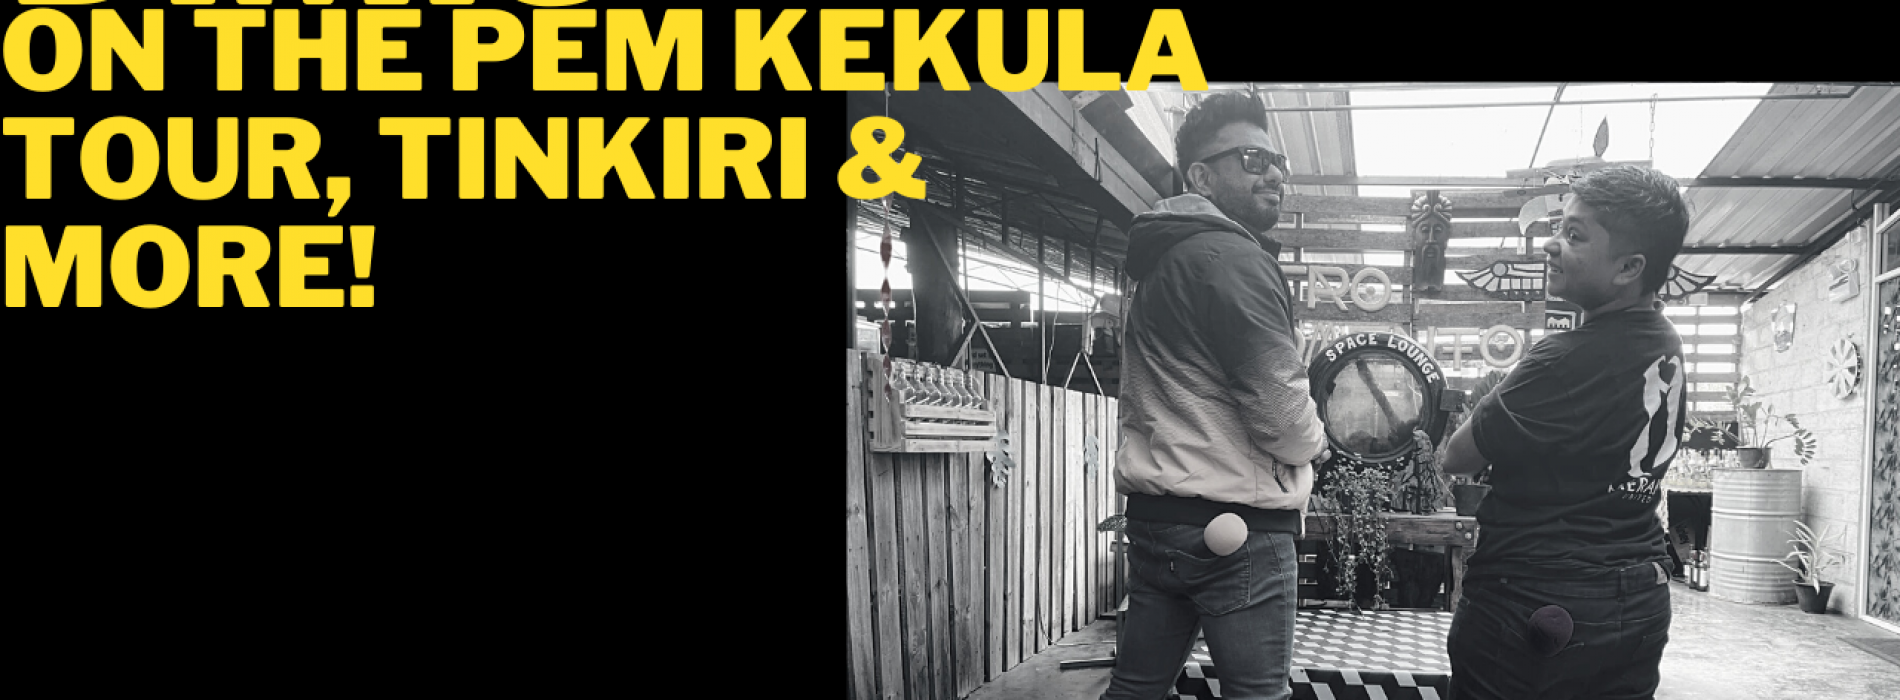 Dimi3 On The Pem Kekula Tour, Tinkiri And More